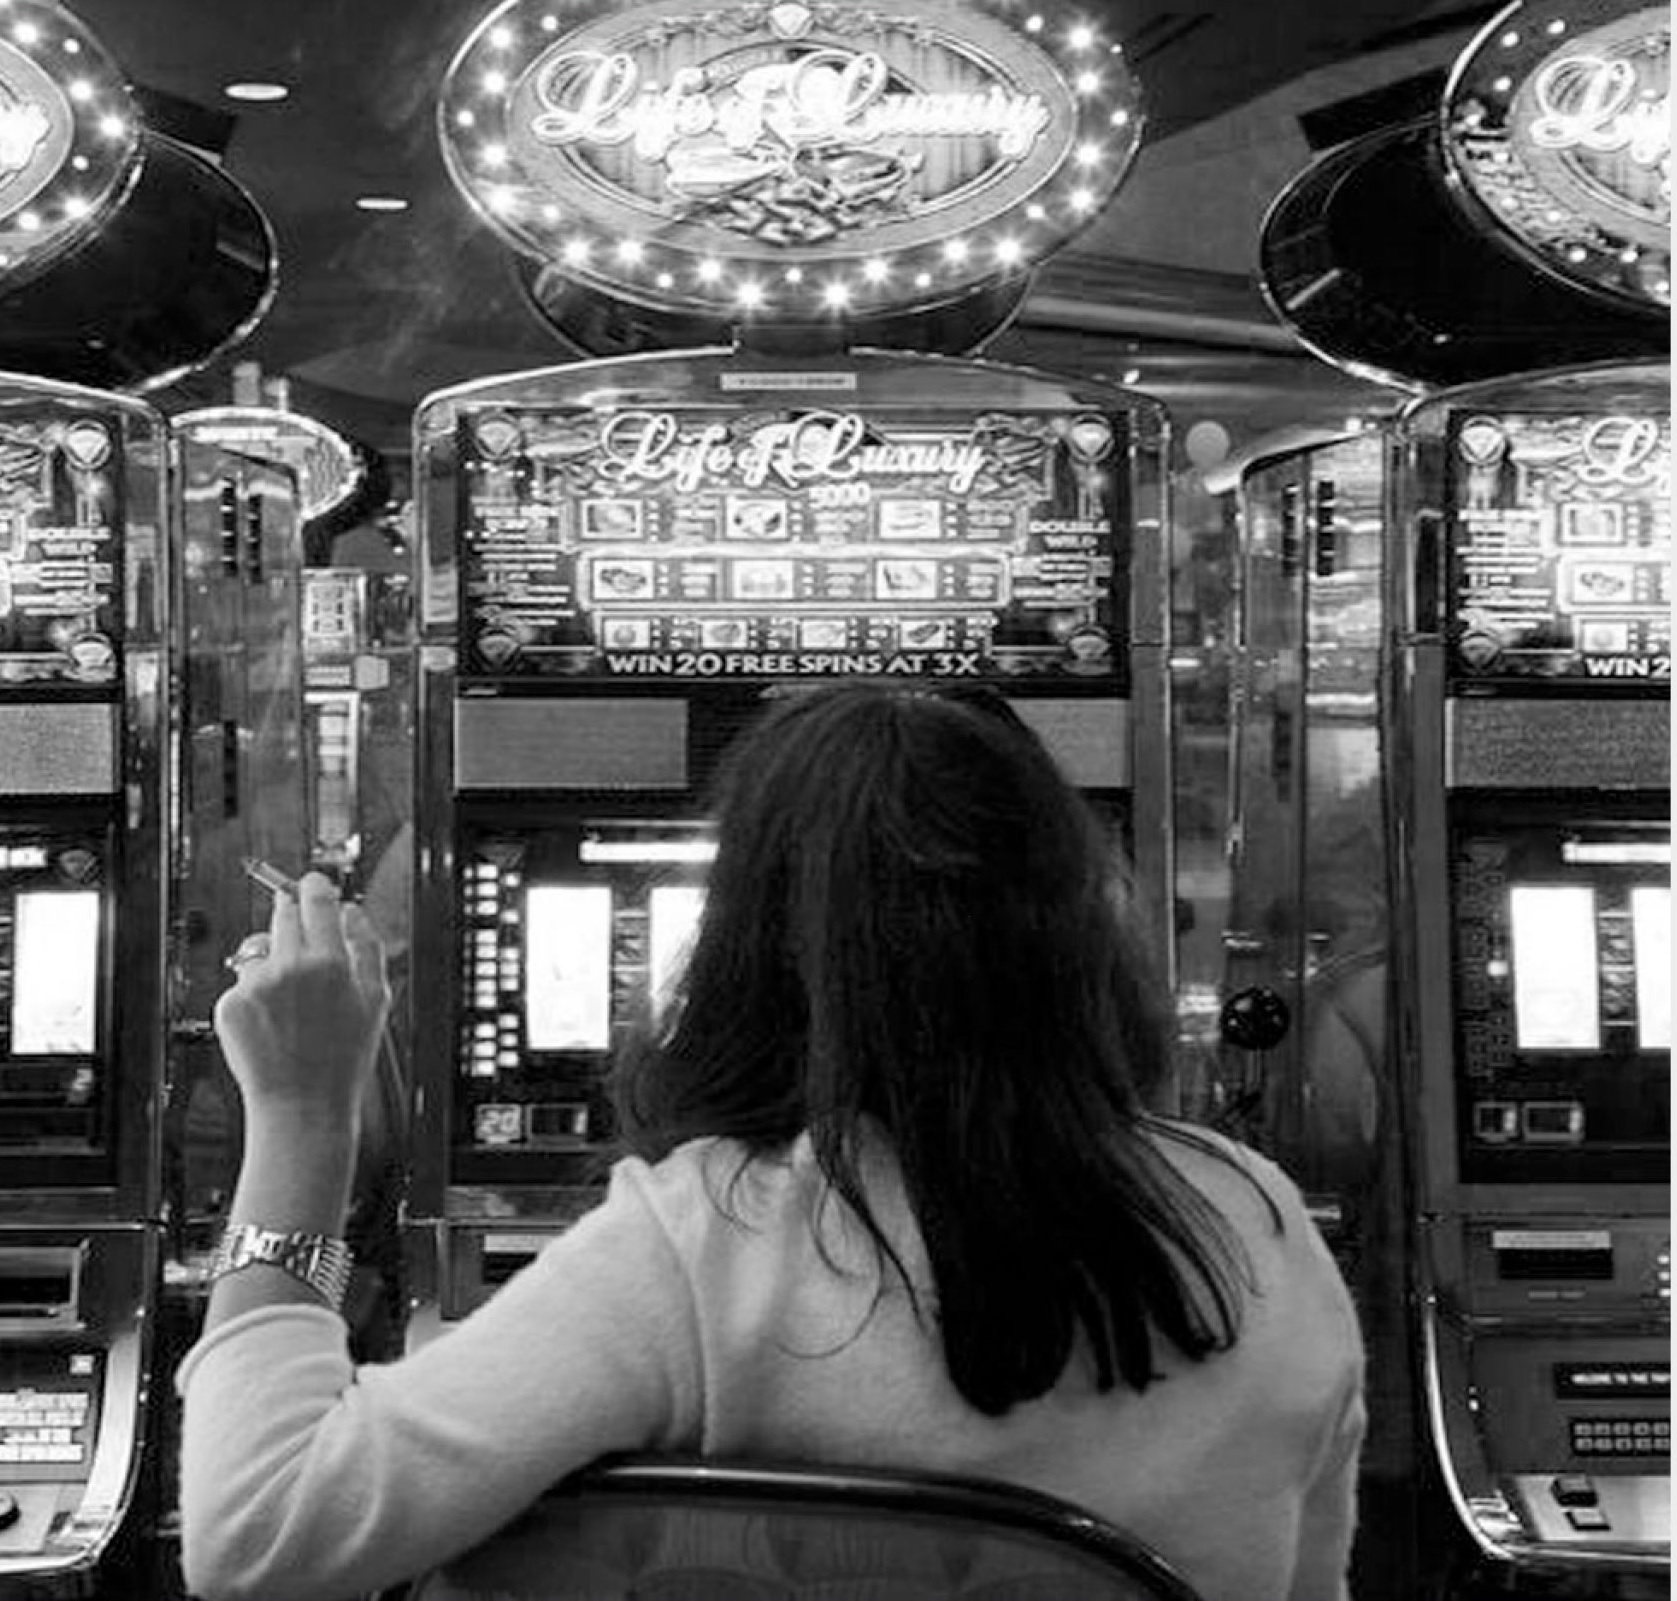 Juegos en Casinos Gratis  Lo más Nuevo para Descargar & Jugar